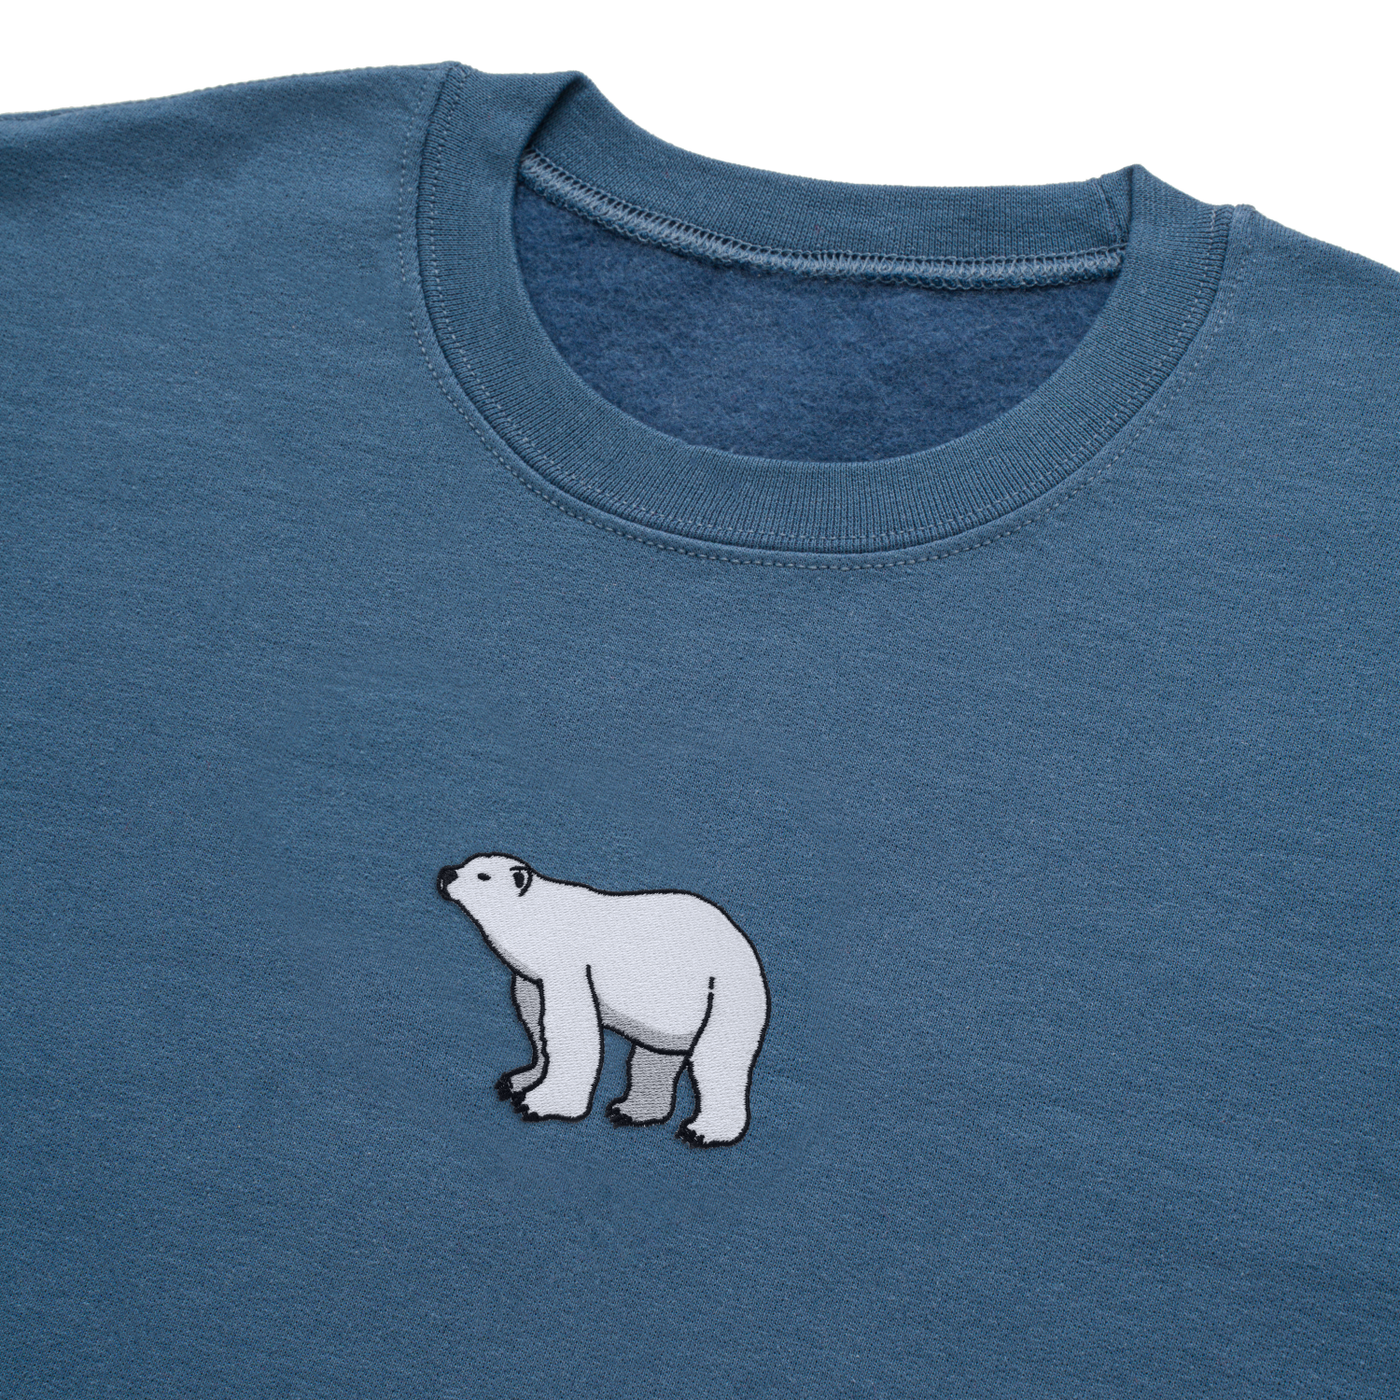 Bobby's Planet Men's Embroidered Polar Bear Sweatshirt from Arctic Polar Animals Collection in Indigo Blue Color#color_indigo-blue